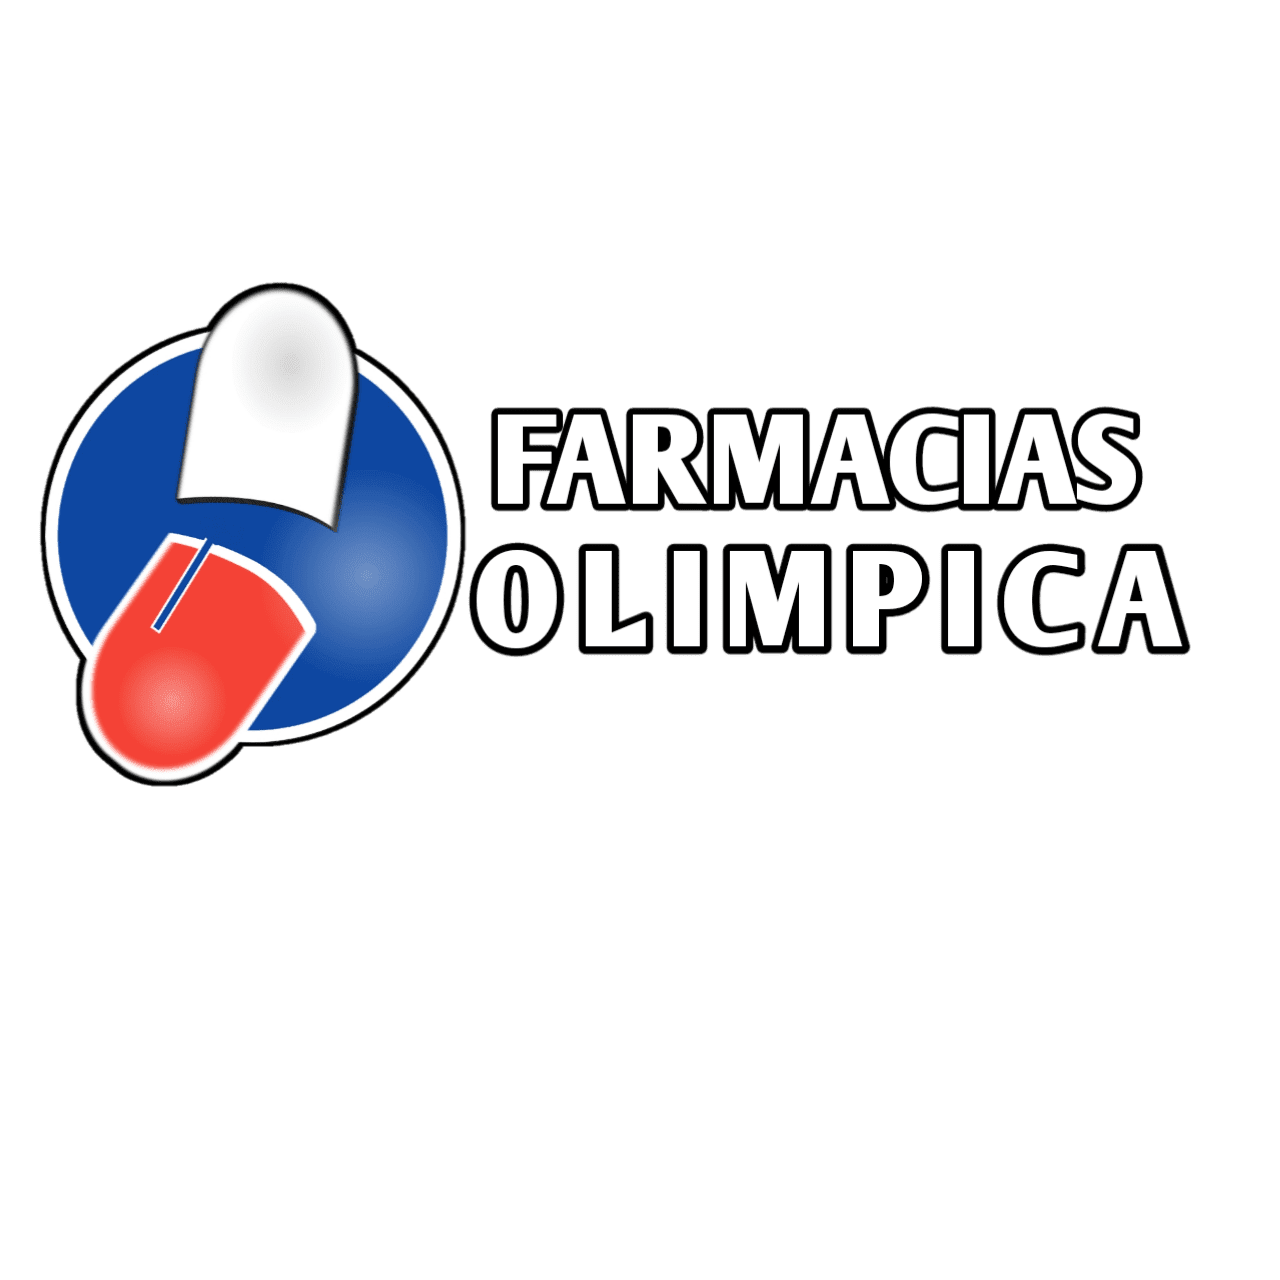 Farmacias Olímpica